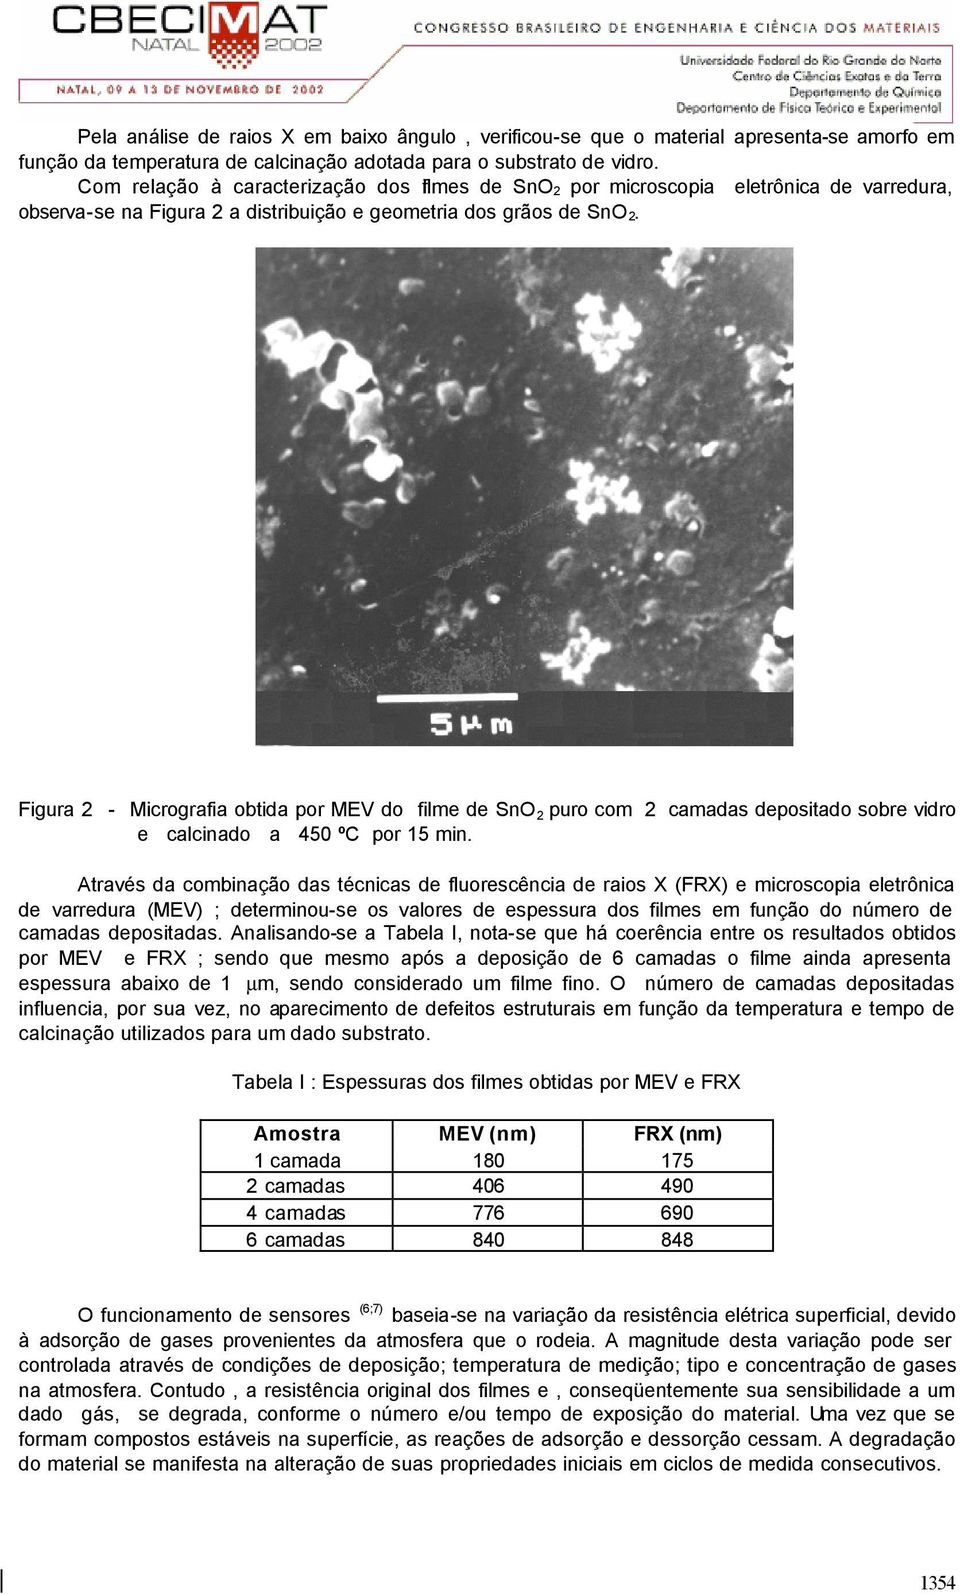 Figura 2 - Micrografia obtida por MEV do filme de SnO 2 puro com 2 camadas depositado sobre vidro e calcinado a 450 ºC por 15 min.